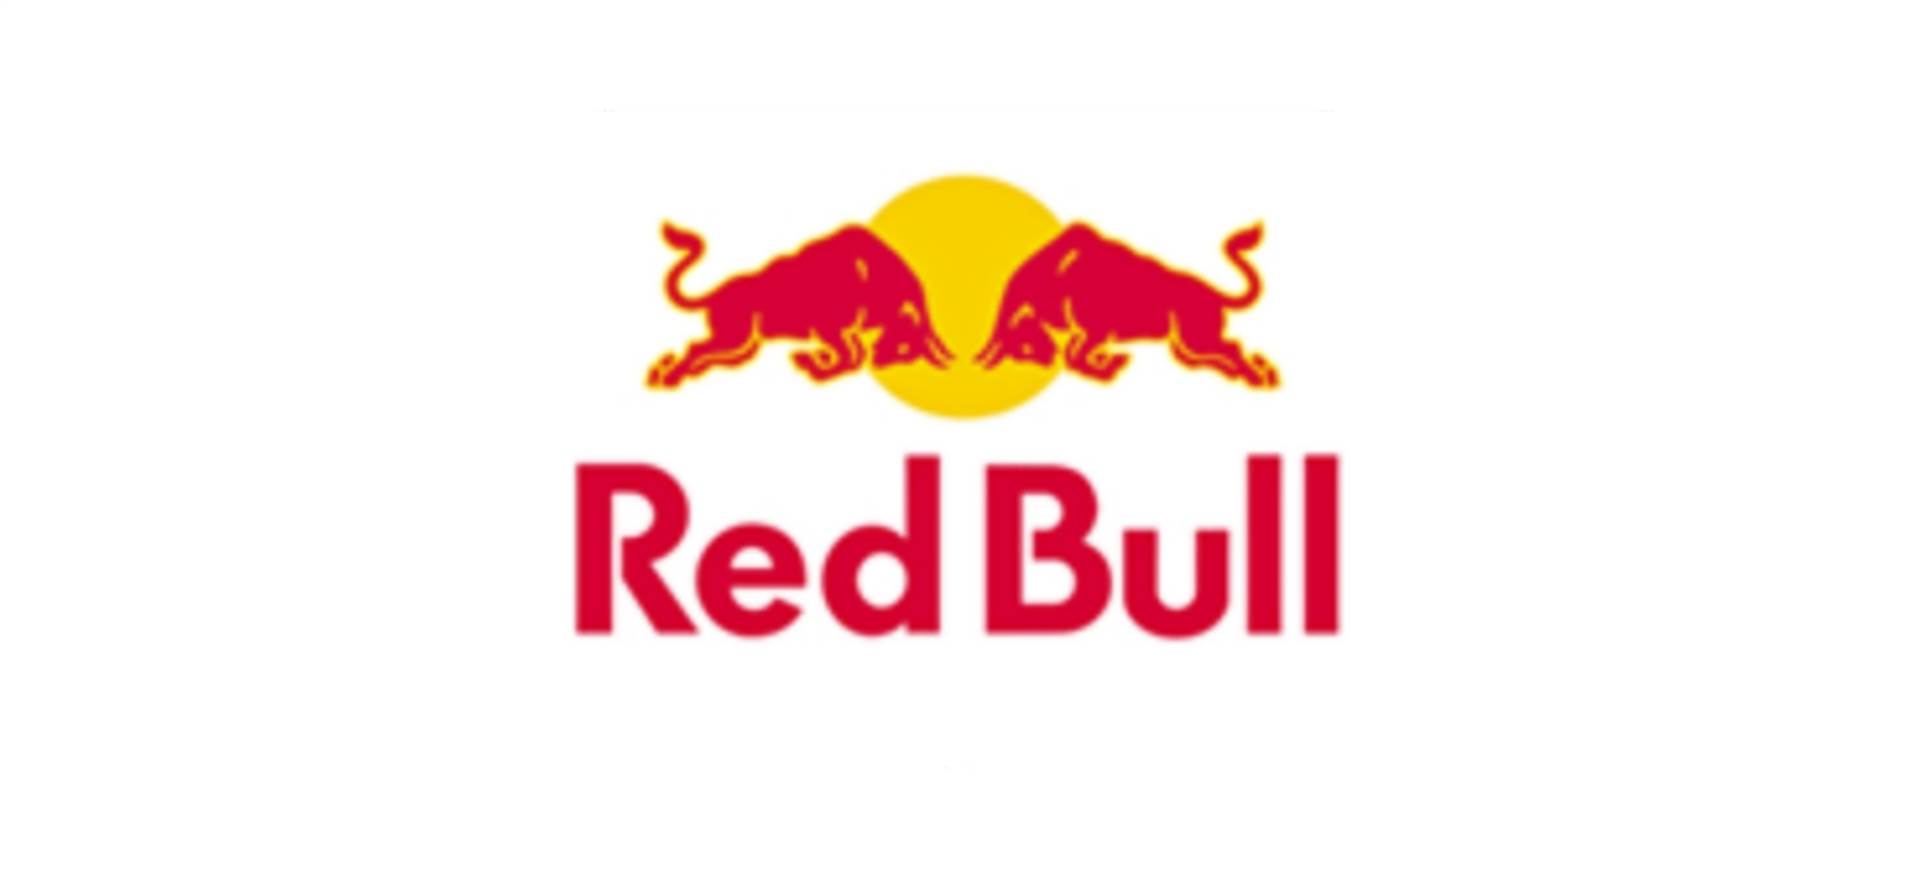 Red Bull e Gran Premio Nuvolari insieme anche nell’edizione 2020